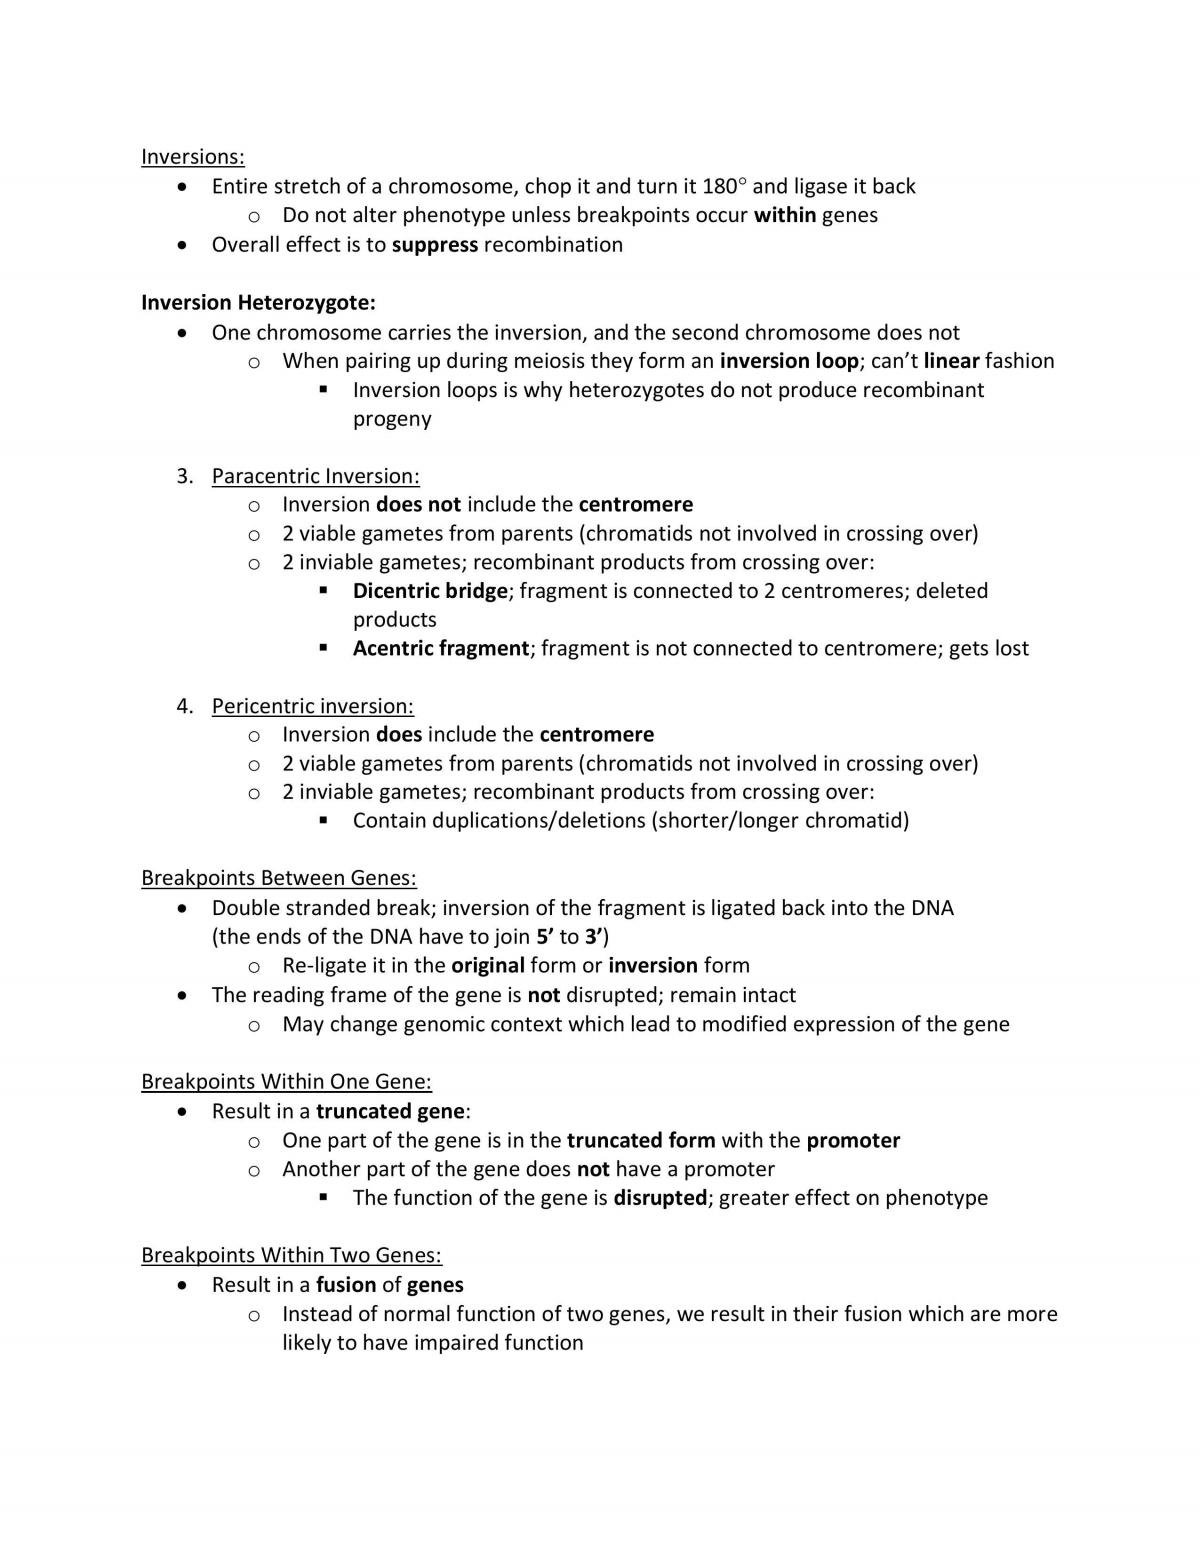 HMB265 Comprehensive Exam Study Guide - Page 27